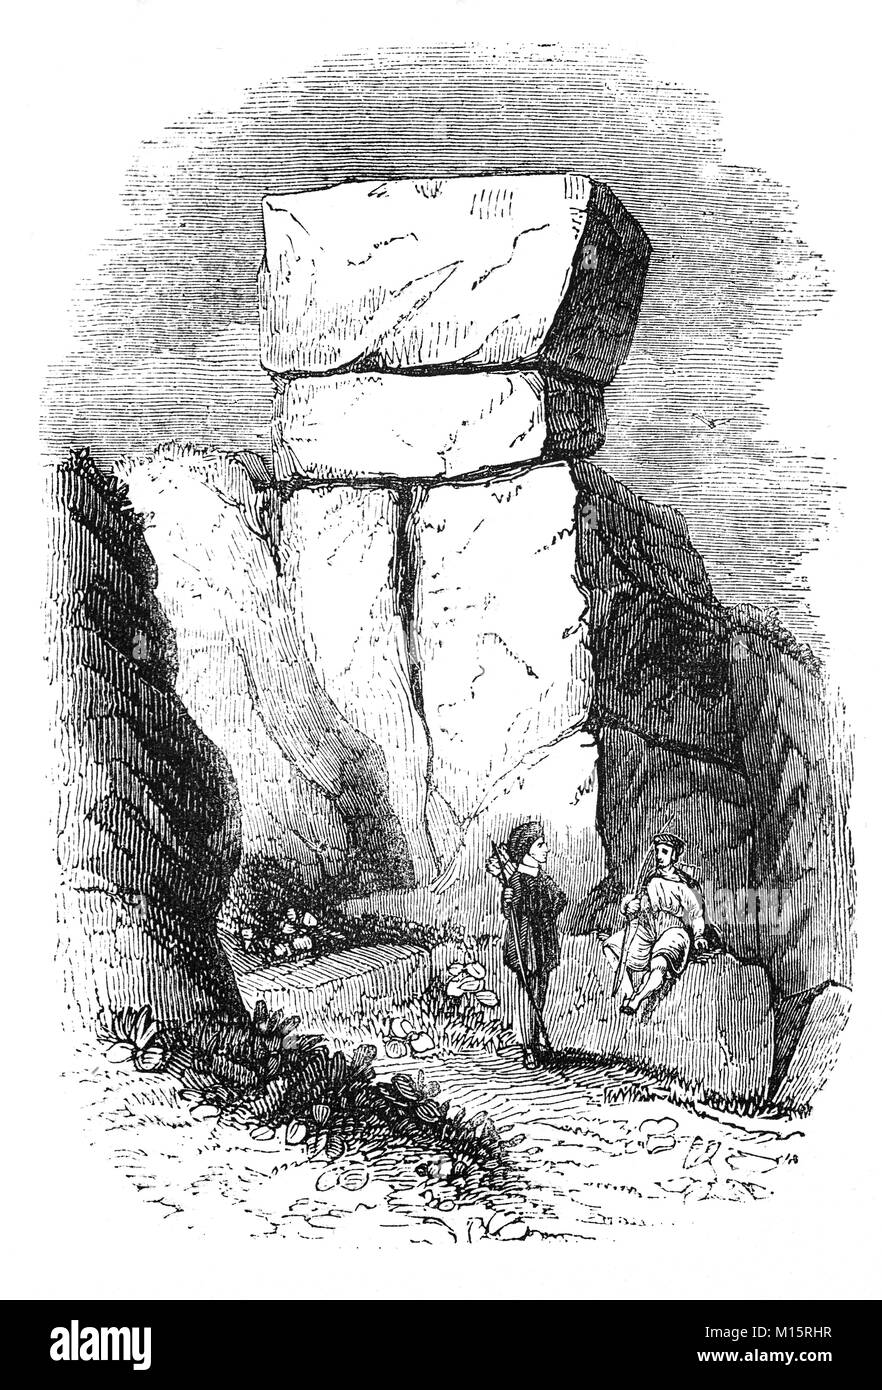 Robin Hood's Stride, ein spektakuläres Tor von gritstone Felsen thront auf einem Bergrücken zwischen Harthill Moor und der Alport-Winster Straße. Die Legende besagt, dass Robin zwischen dem Turm schreitet - wie Steine an einem Ende der Tor während des 14. Jahrhunderts. Eine alternative lokale Name ist 'Mock Beggar's Hall', Derbyshire Peak District, England. Stockfoto